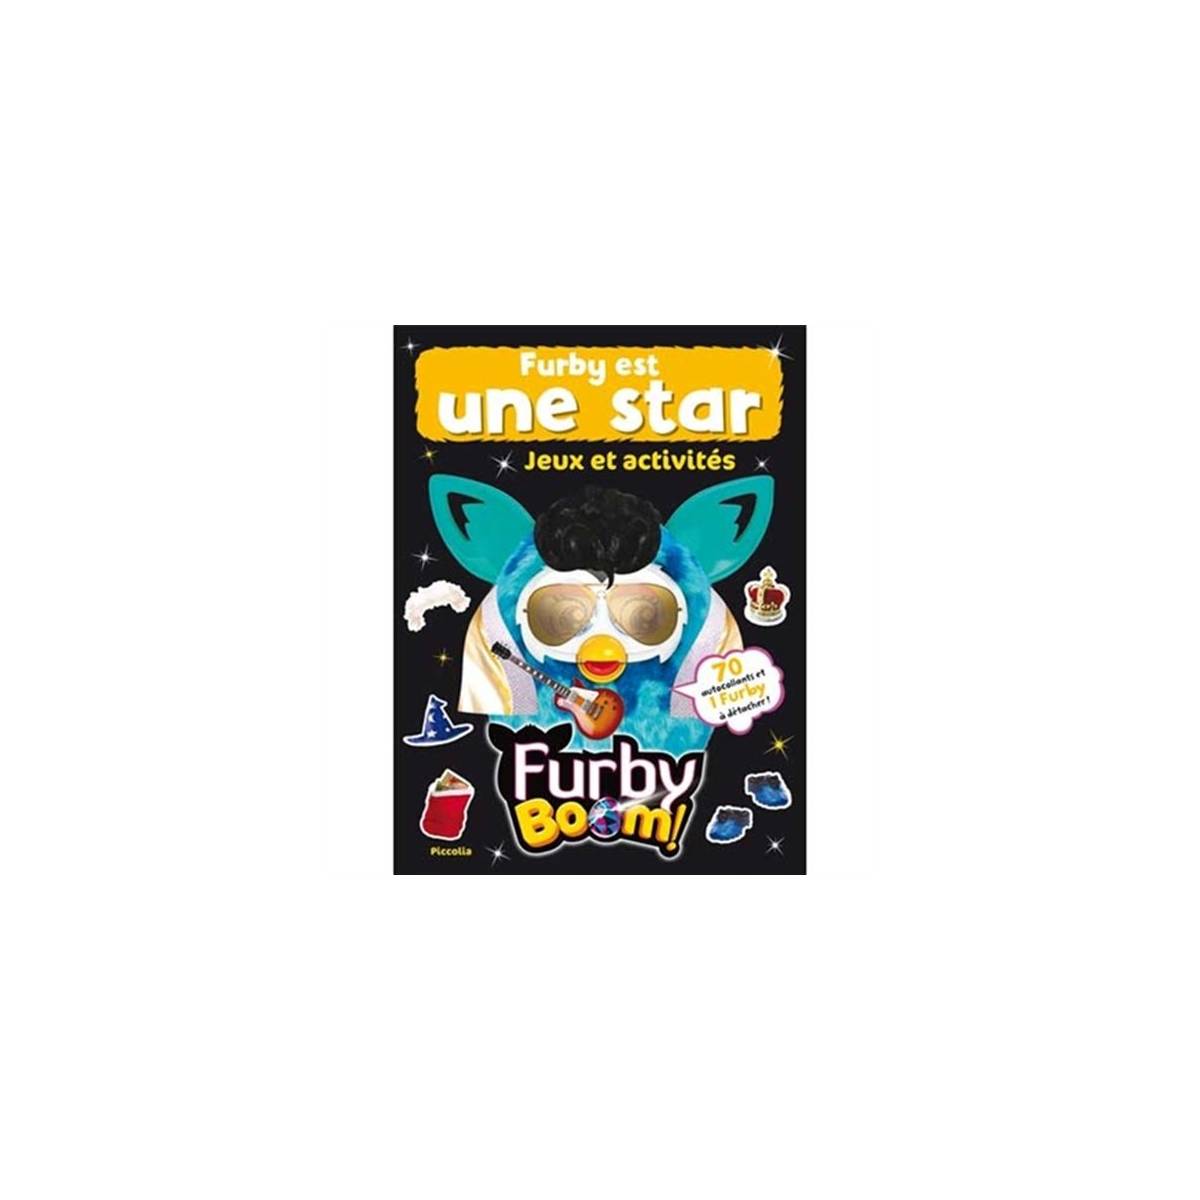 Livre d'activités - Furby est une star